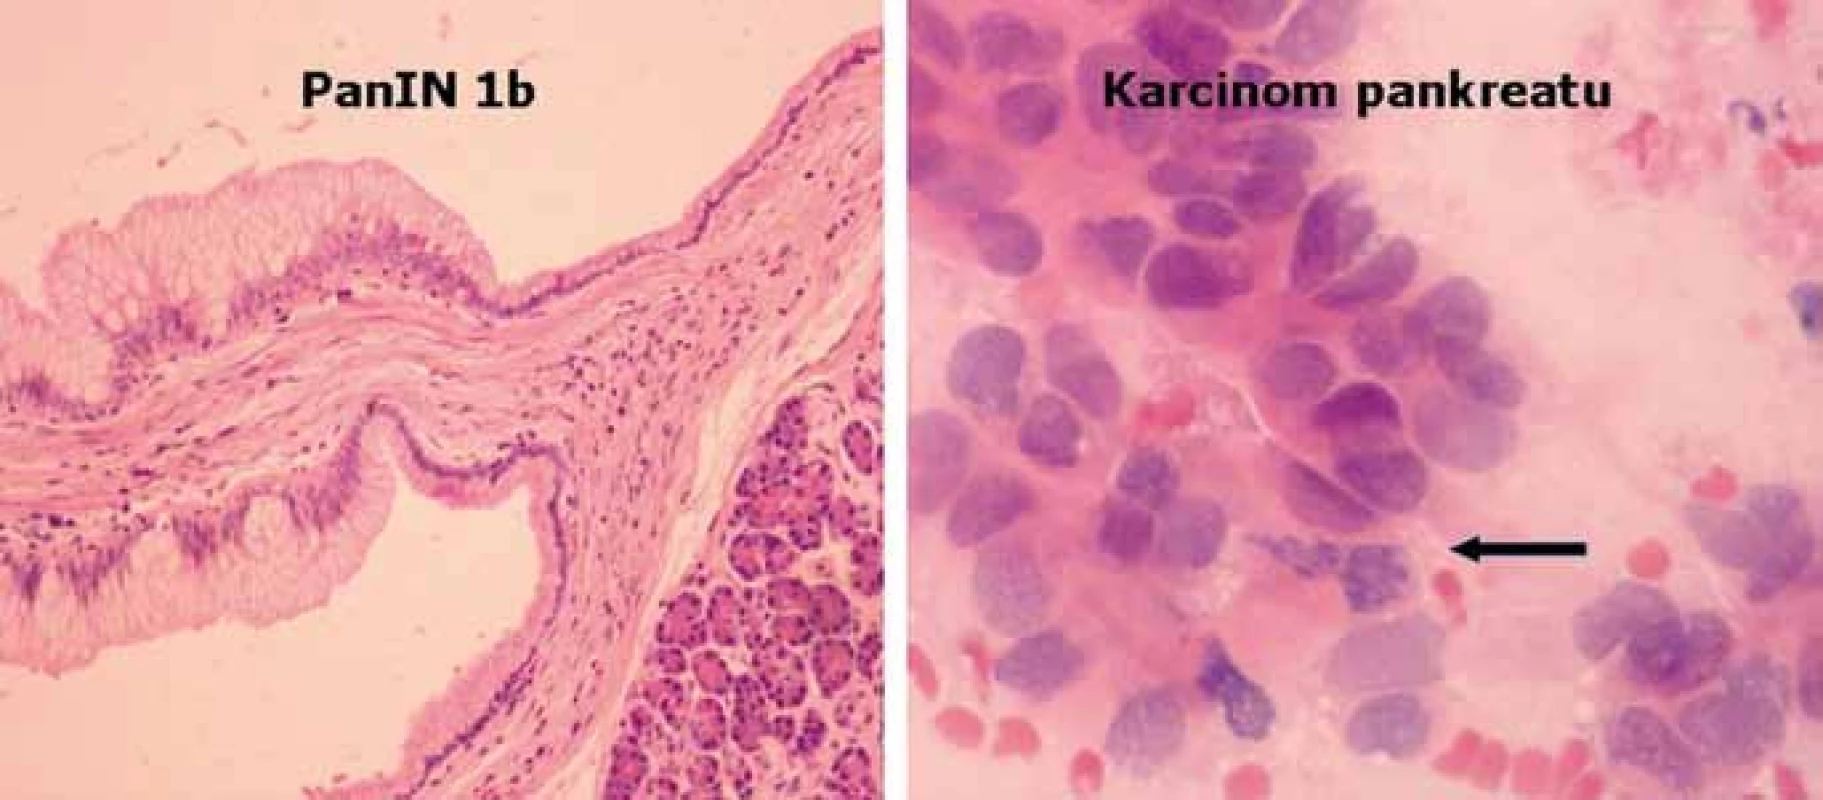 Histologický obraz léze PanIN1b a karcinomu pankreatu.